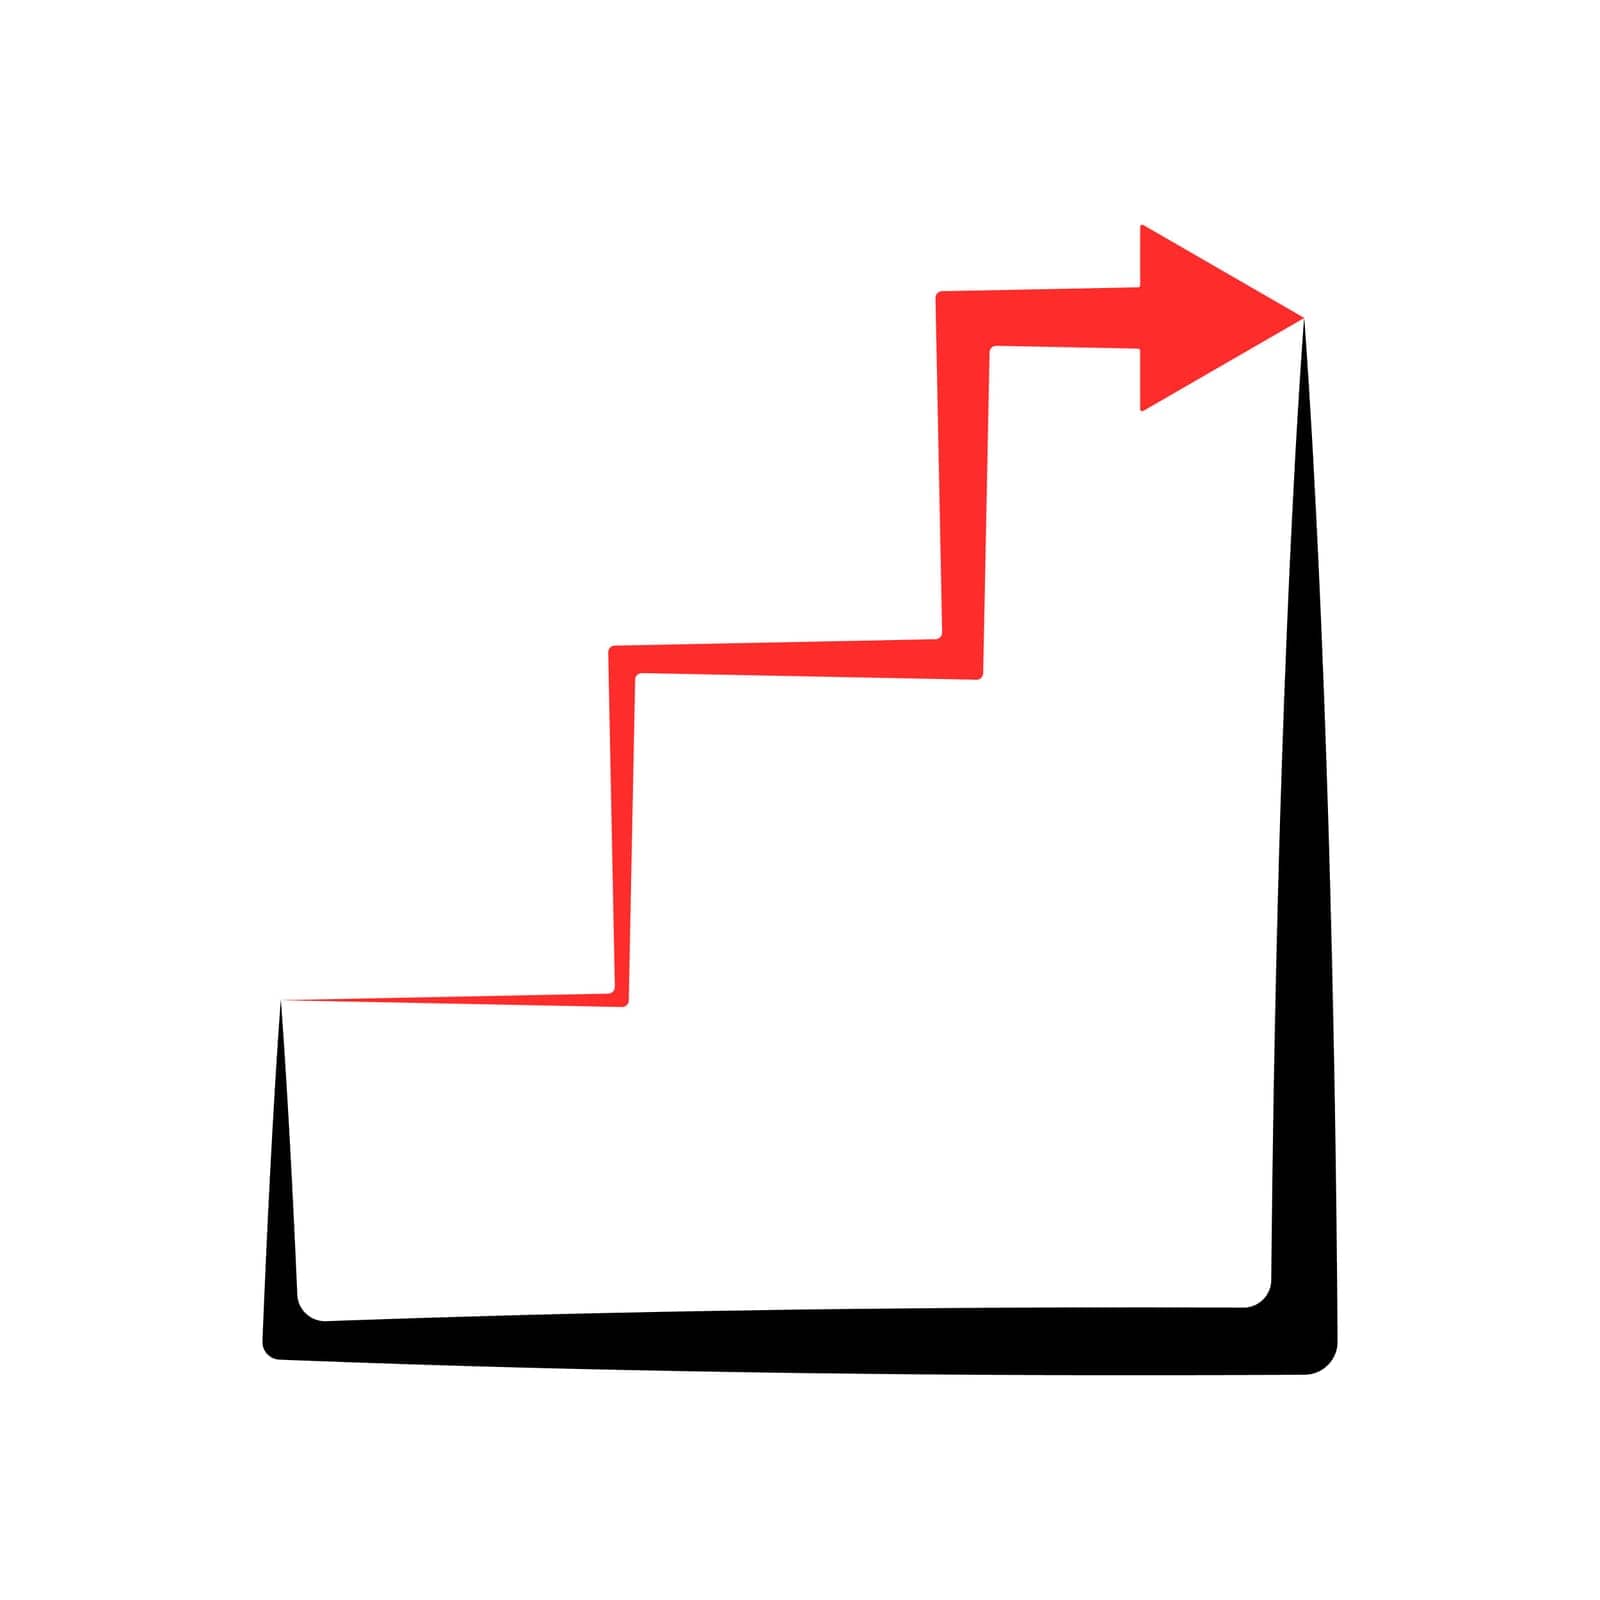 Growing graph vector. Red rising arrow vector. Trading chart vector. by Moreidea